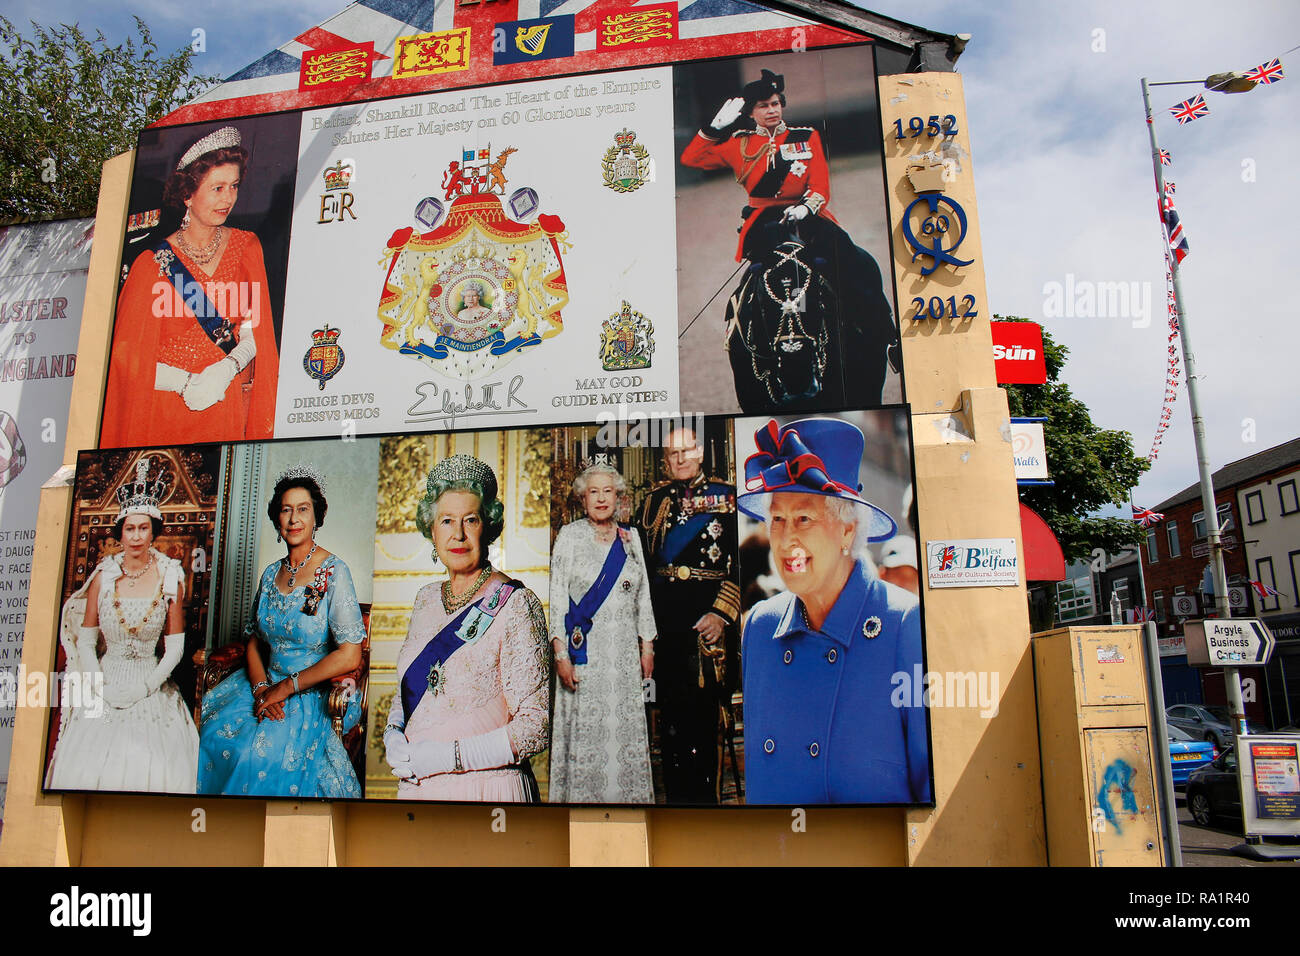 britische Fahne und Portrait der britischen Koenigin Elizabeth II - Wandbild/ Mural, das an den Buergerkrieg erinnert , im protestantischen Teil Belfa Stock Photo